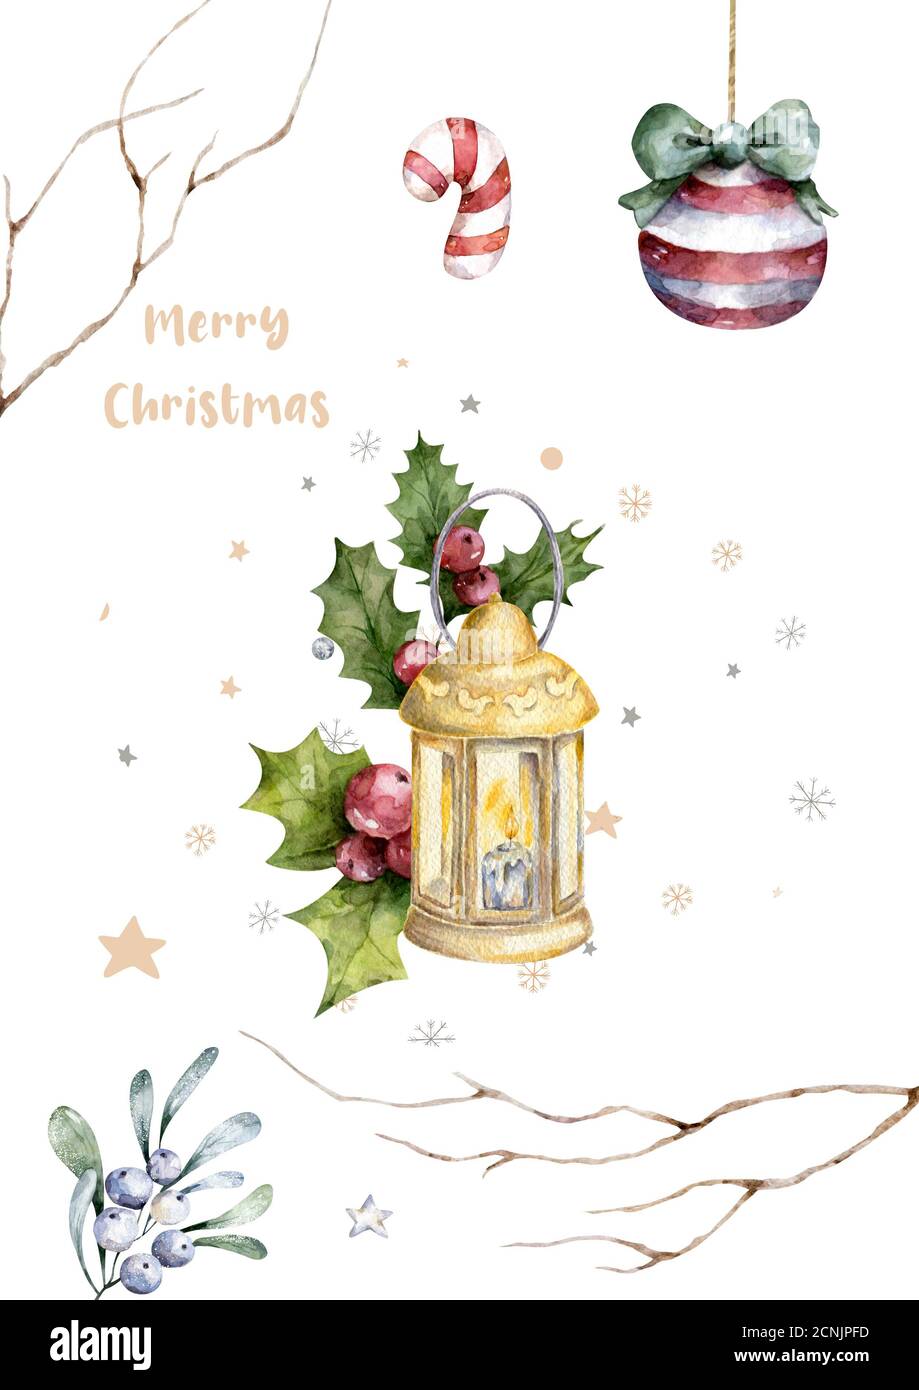 Candela rossa di Natale con boughs di agrifoglio. Watercolor winter disegnato a mano Imposta illustrazione isolata su sfondo bianco Foto Stock